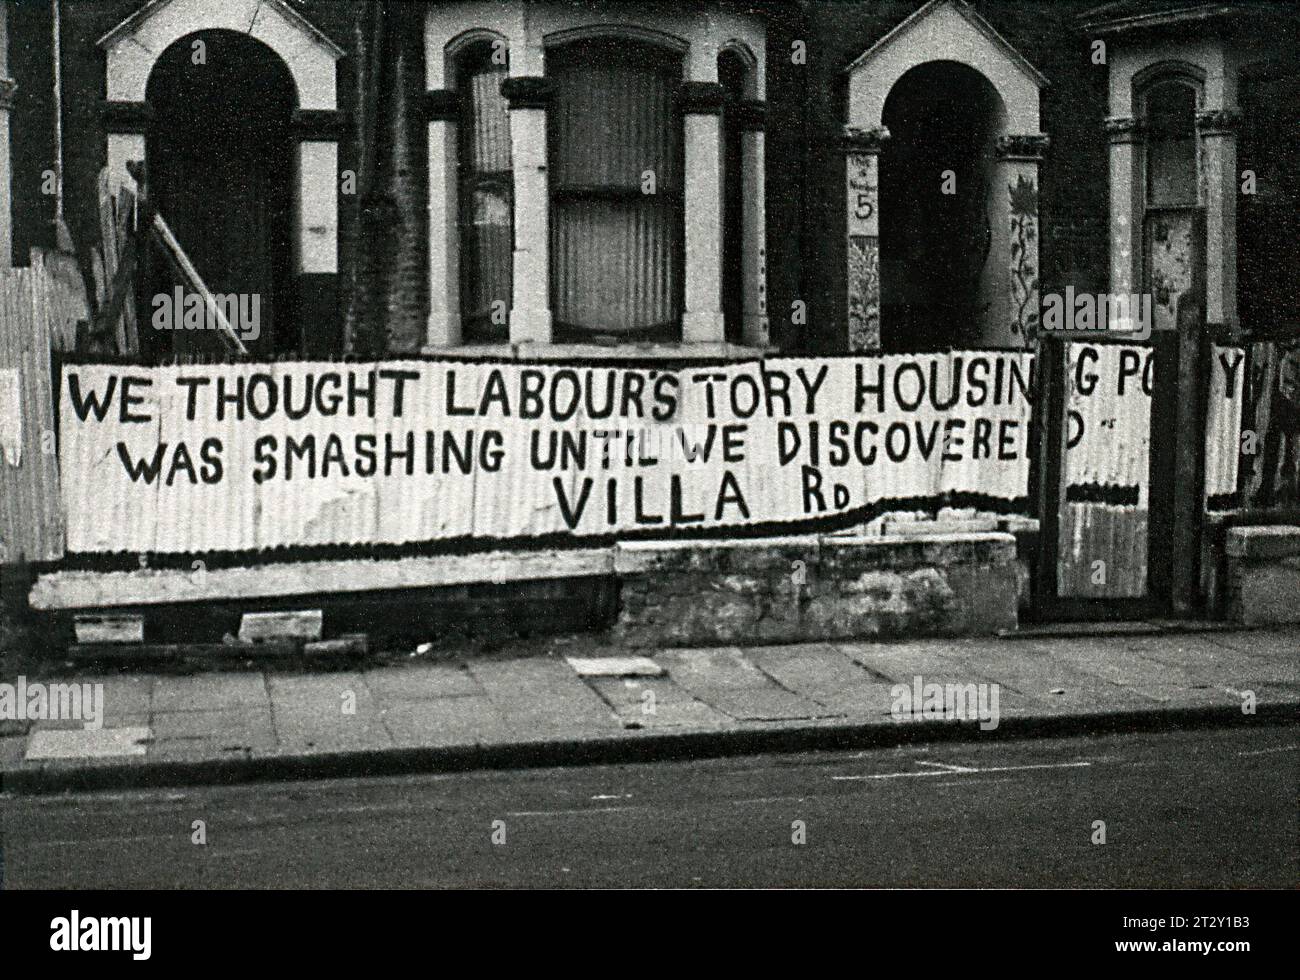 Photographie d'archives en noir et blanc des années 1970 de graffitis à Villa Road, Lambeth, South London. On y lit que nous pensions que la politique de logement des conservateurs du Parti travailliste était en train de se briser jusqu'à ce que nous découvrions Villa Rd Banque D'Images